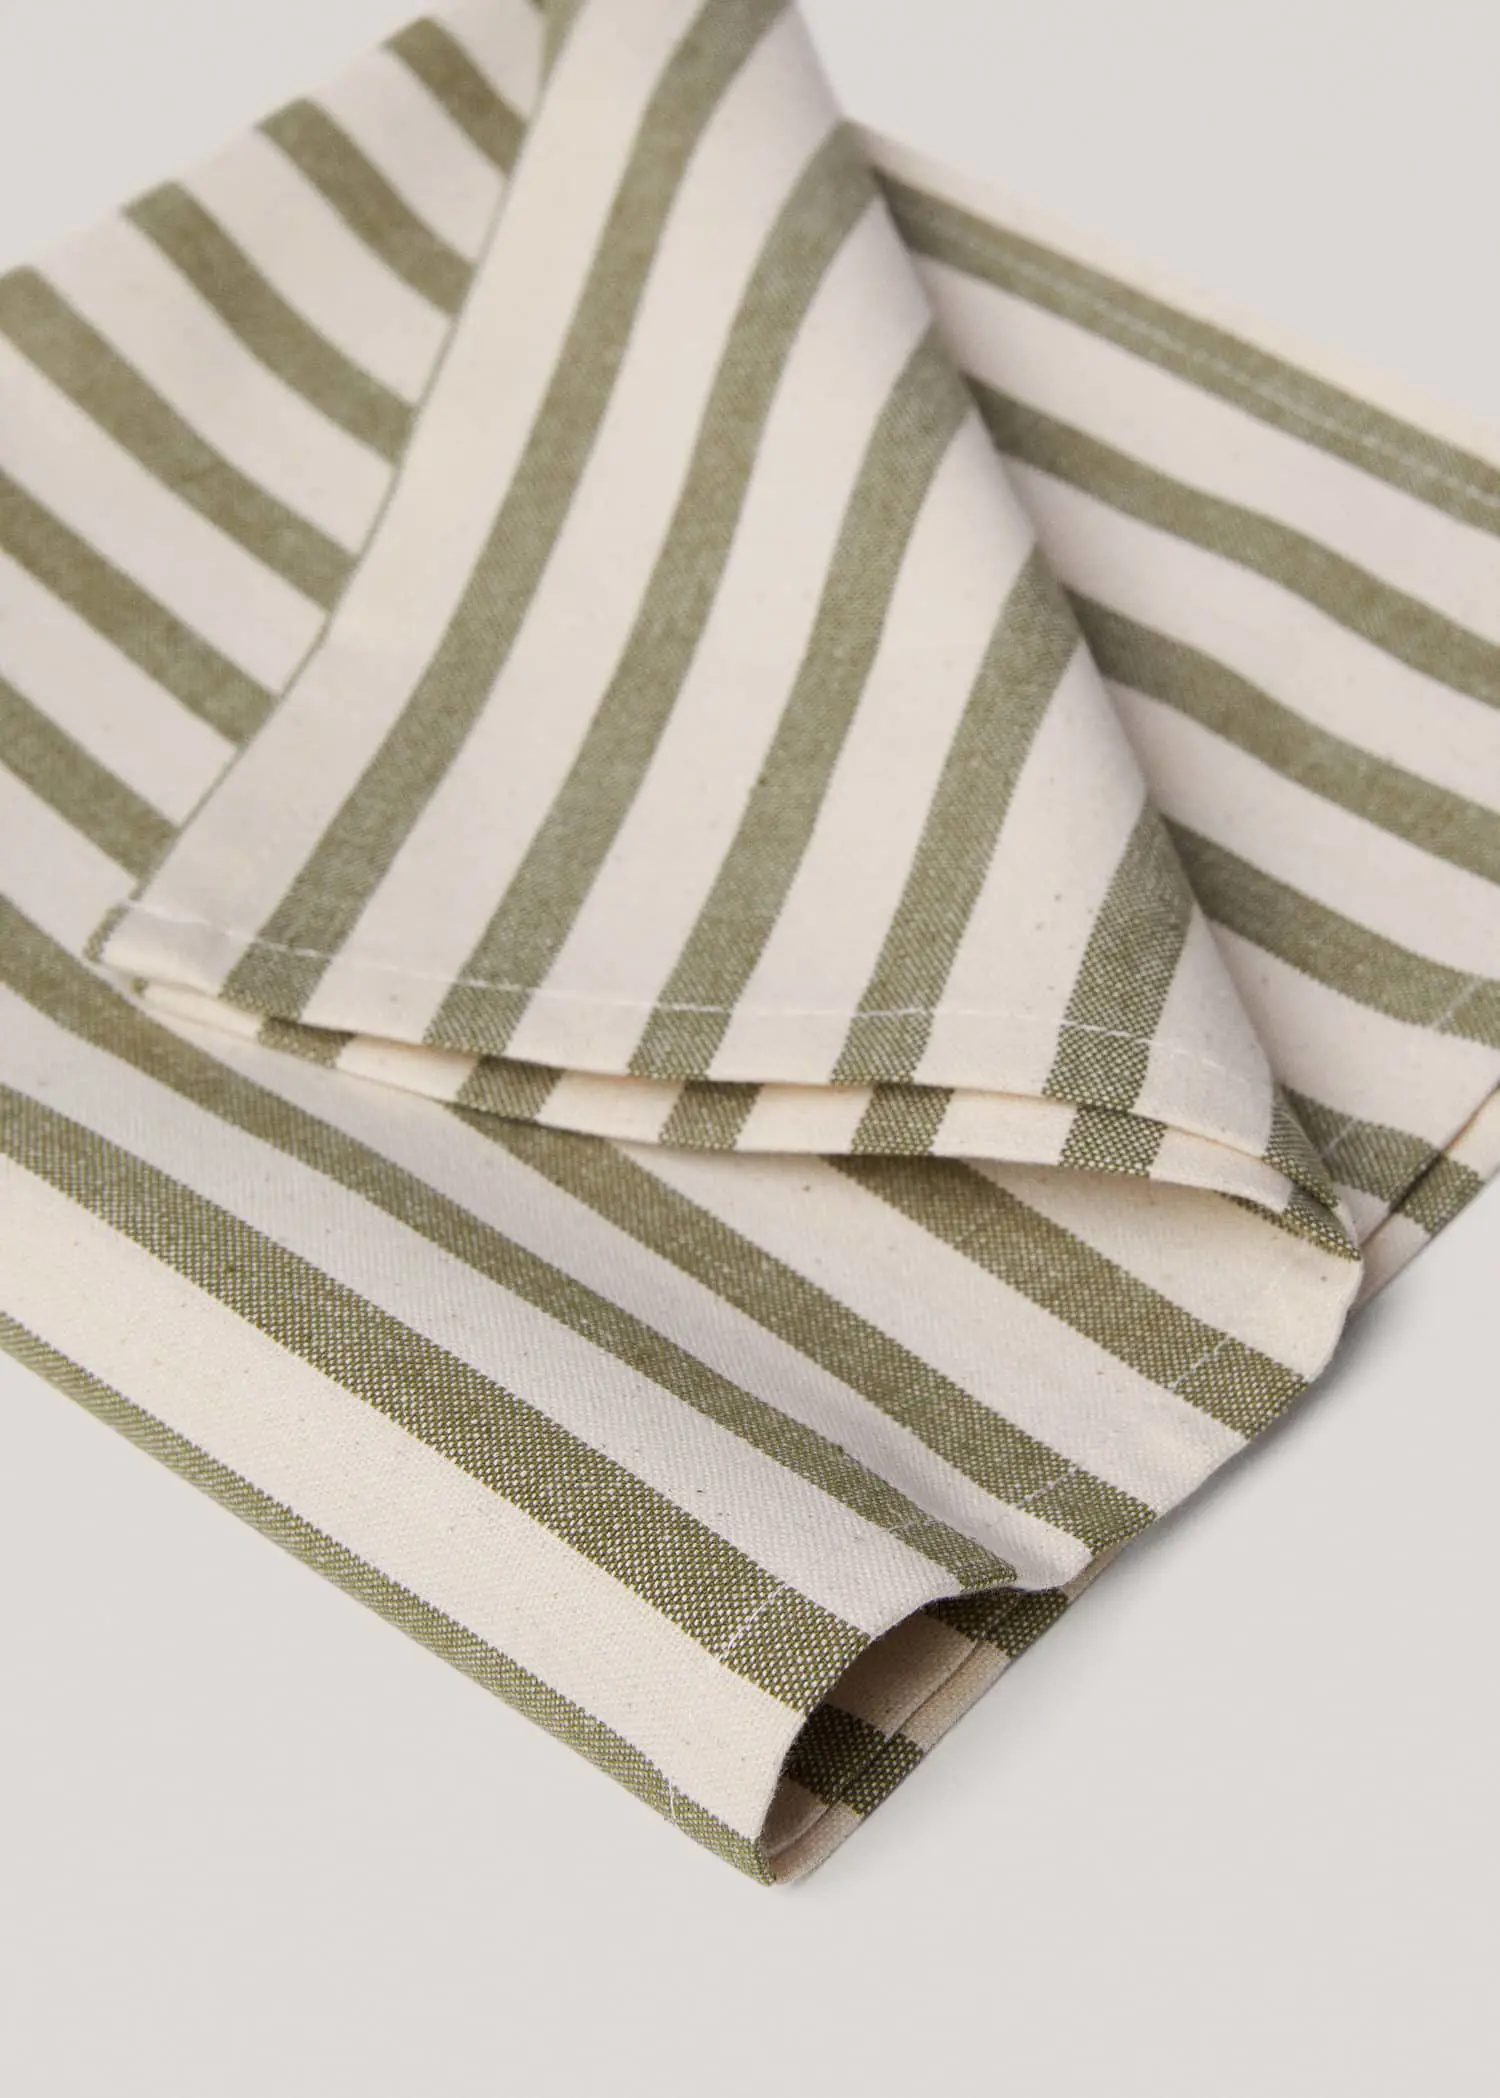 Mango 100% cotton striped napkin. 3